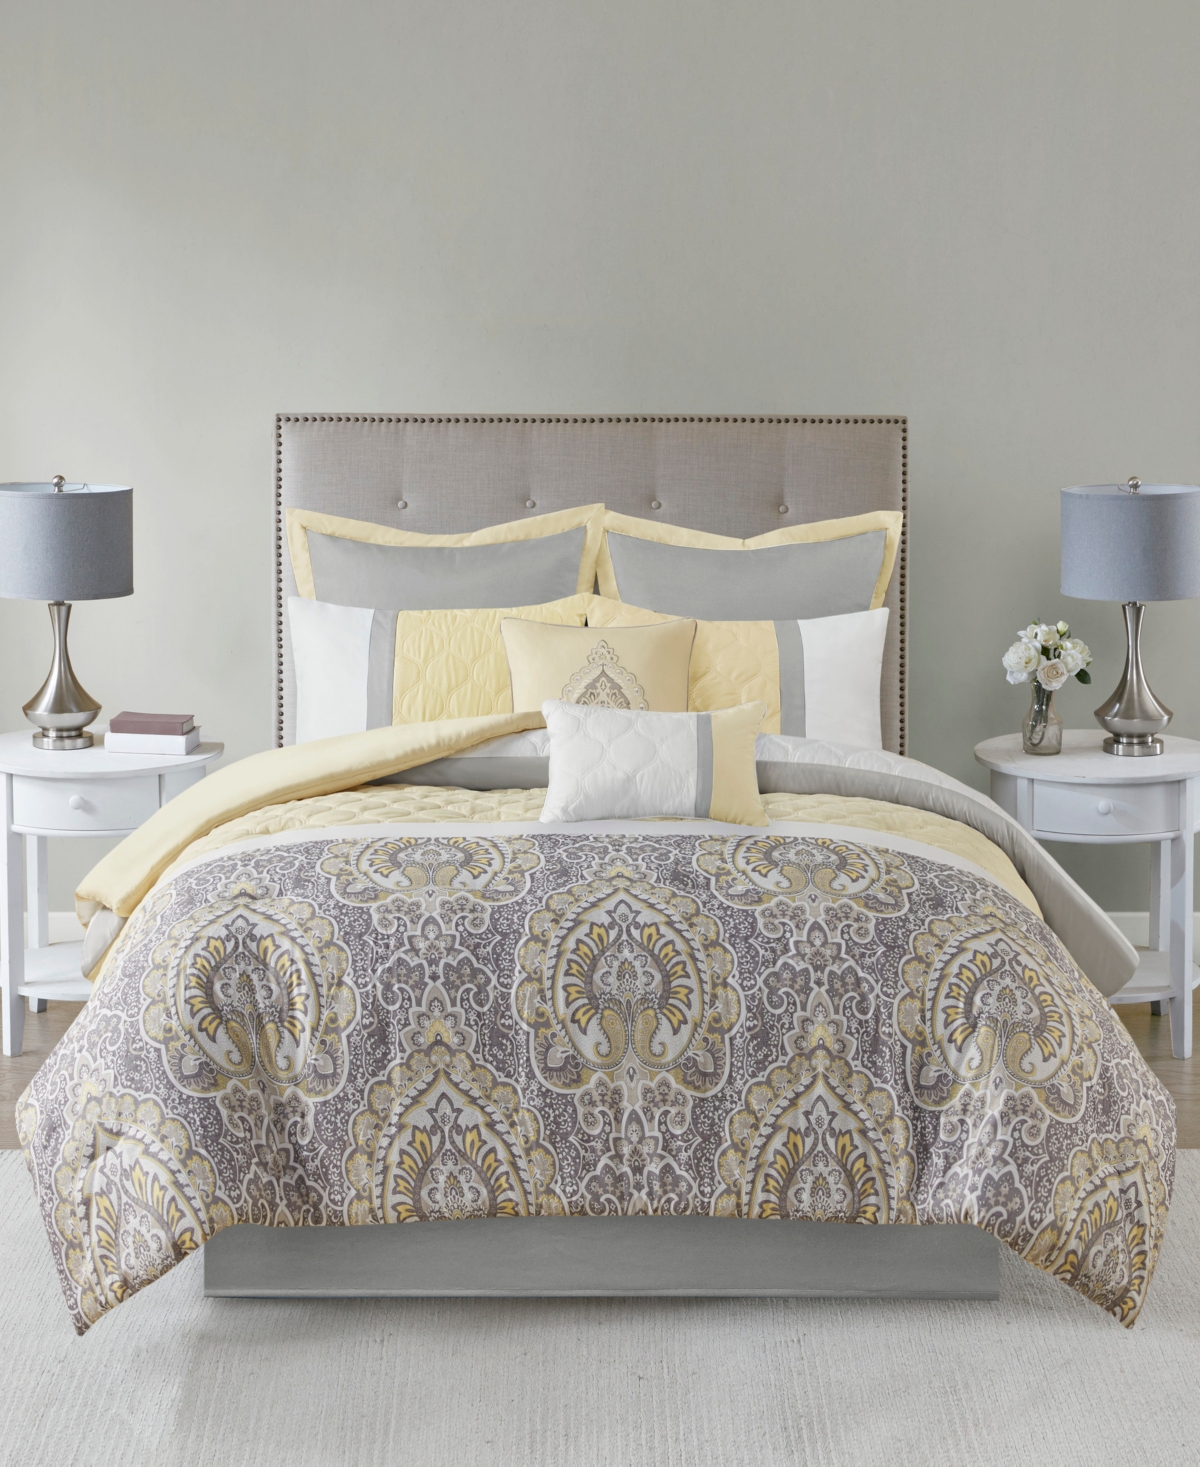 510 Design Shawnee 8-Pc. Comforter Set, King Bedding